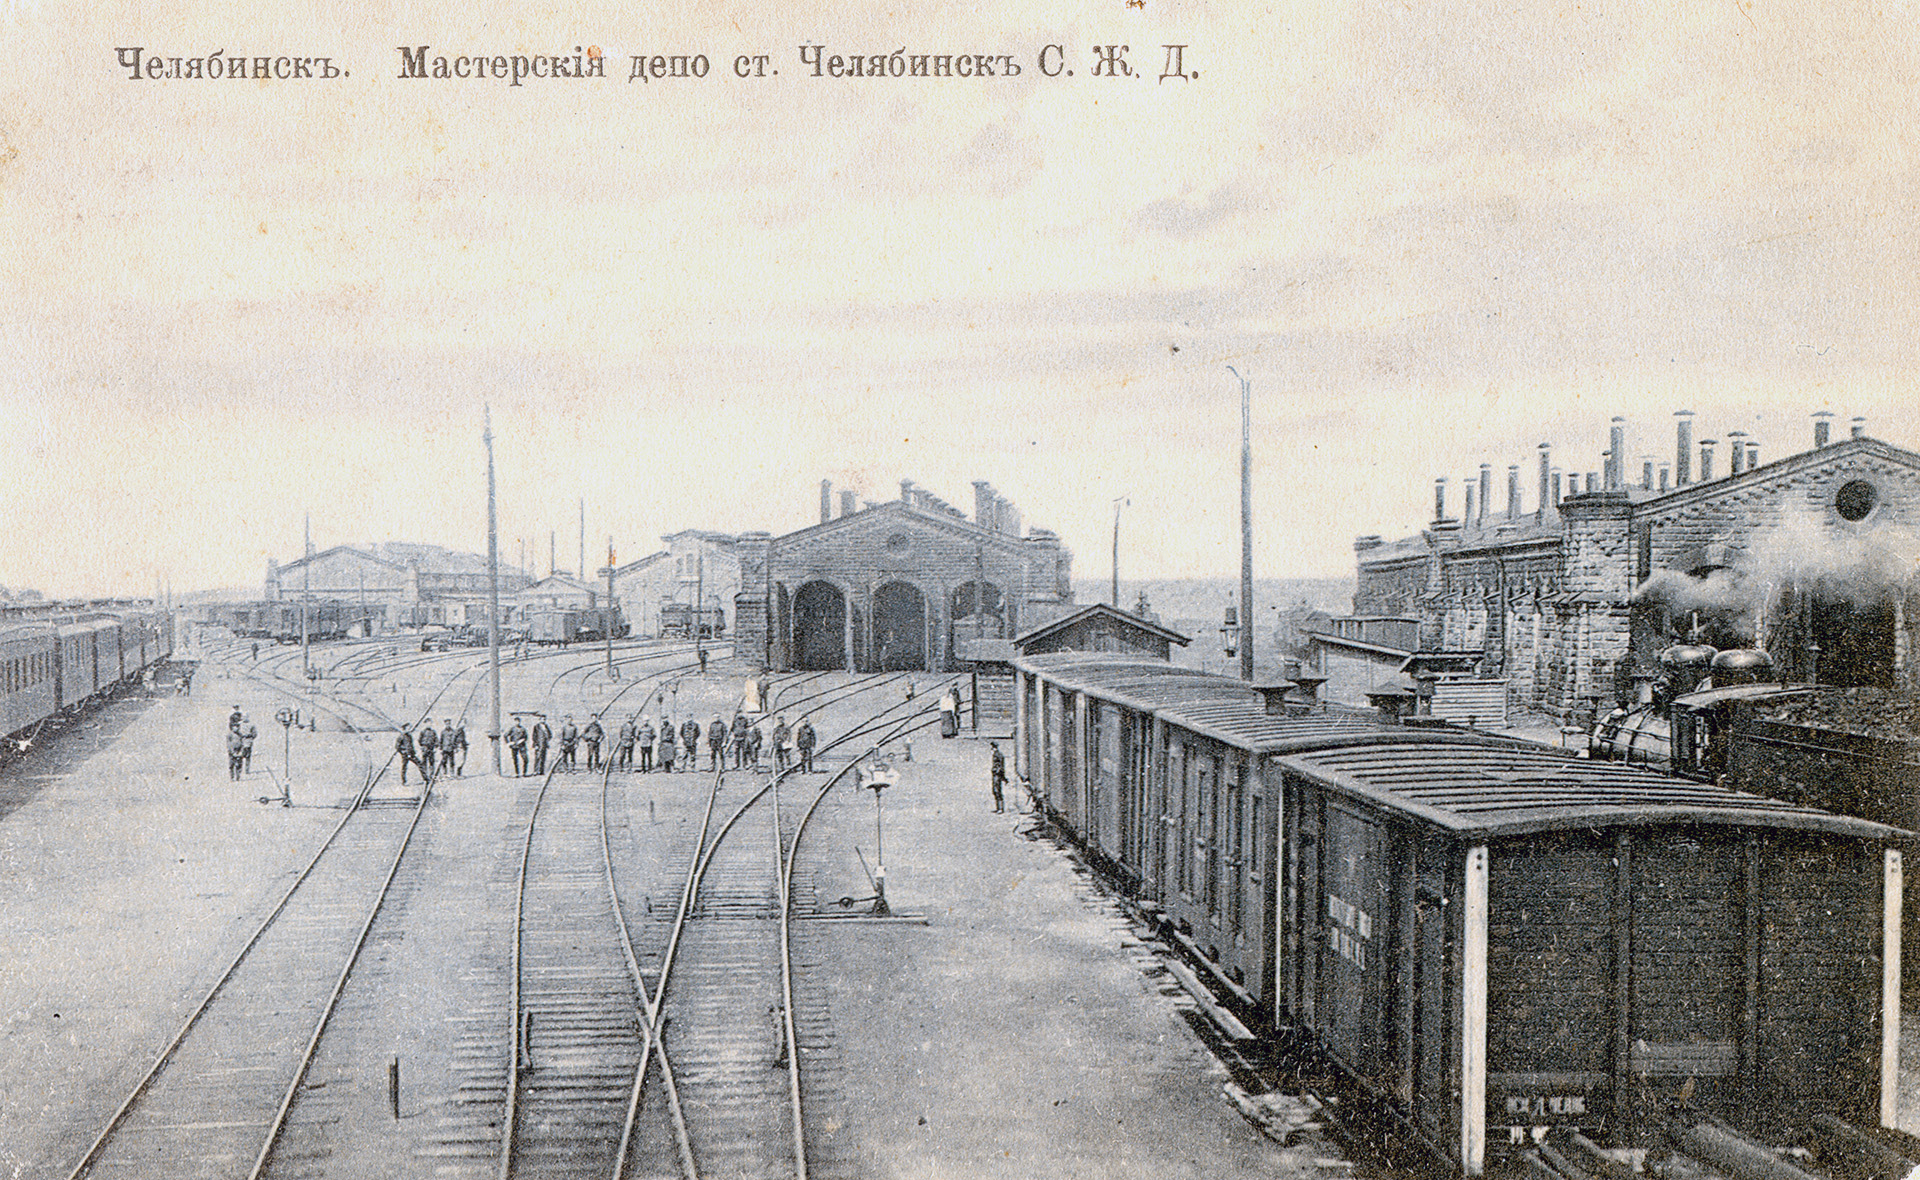 Такой станция Челябинск была в самом начале. Конец XIX века